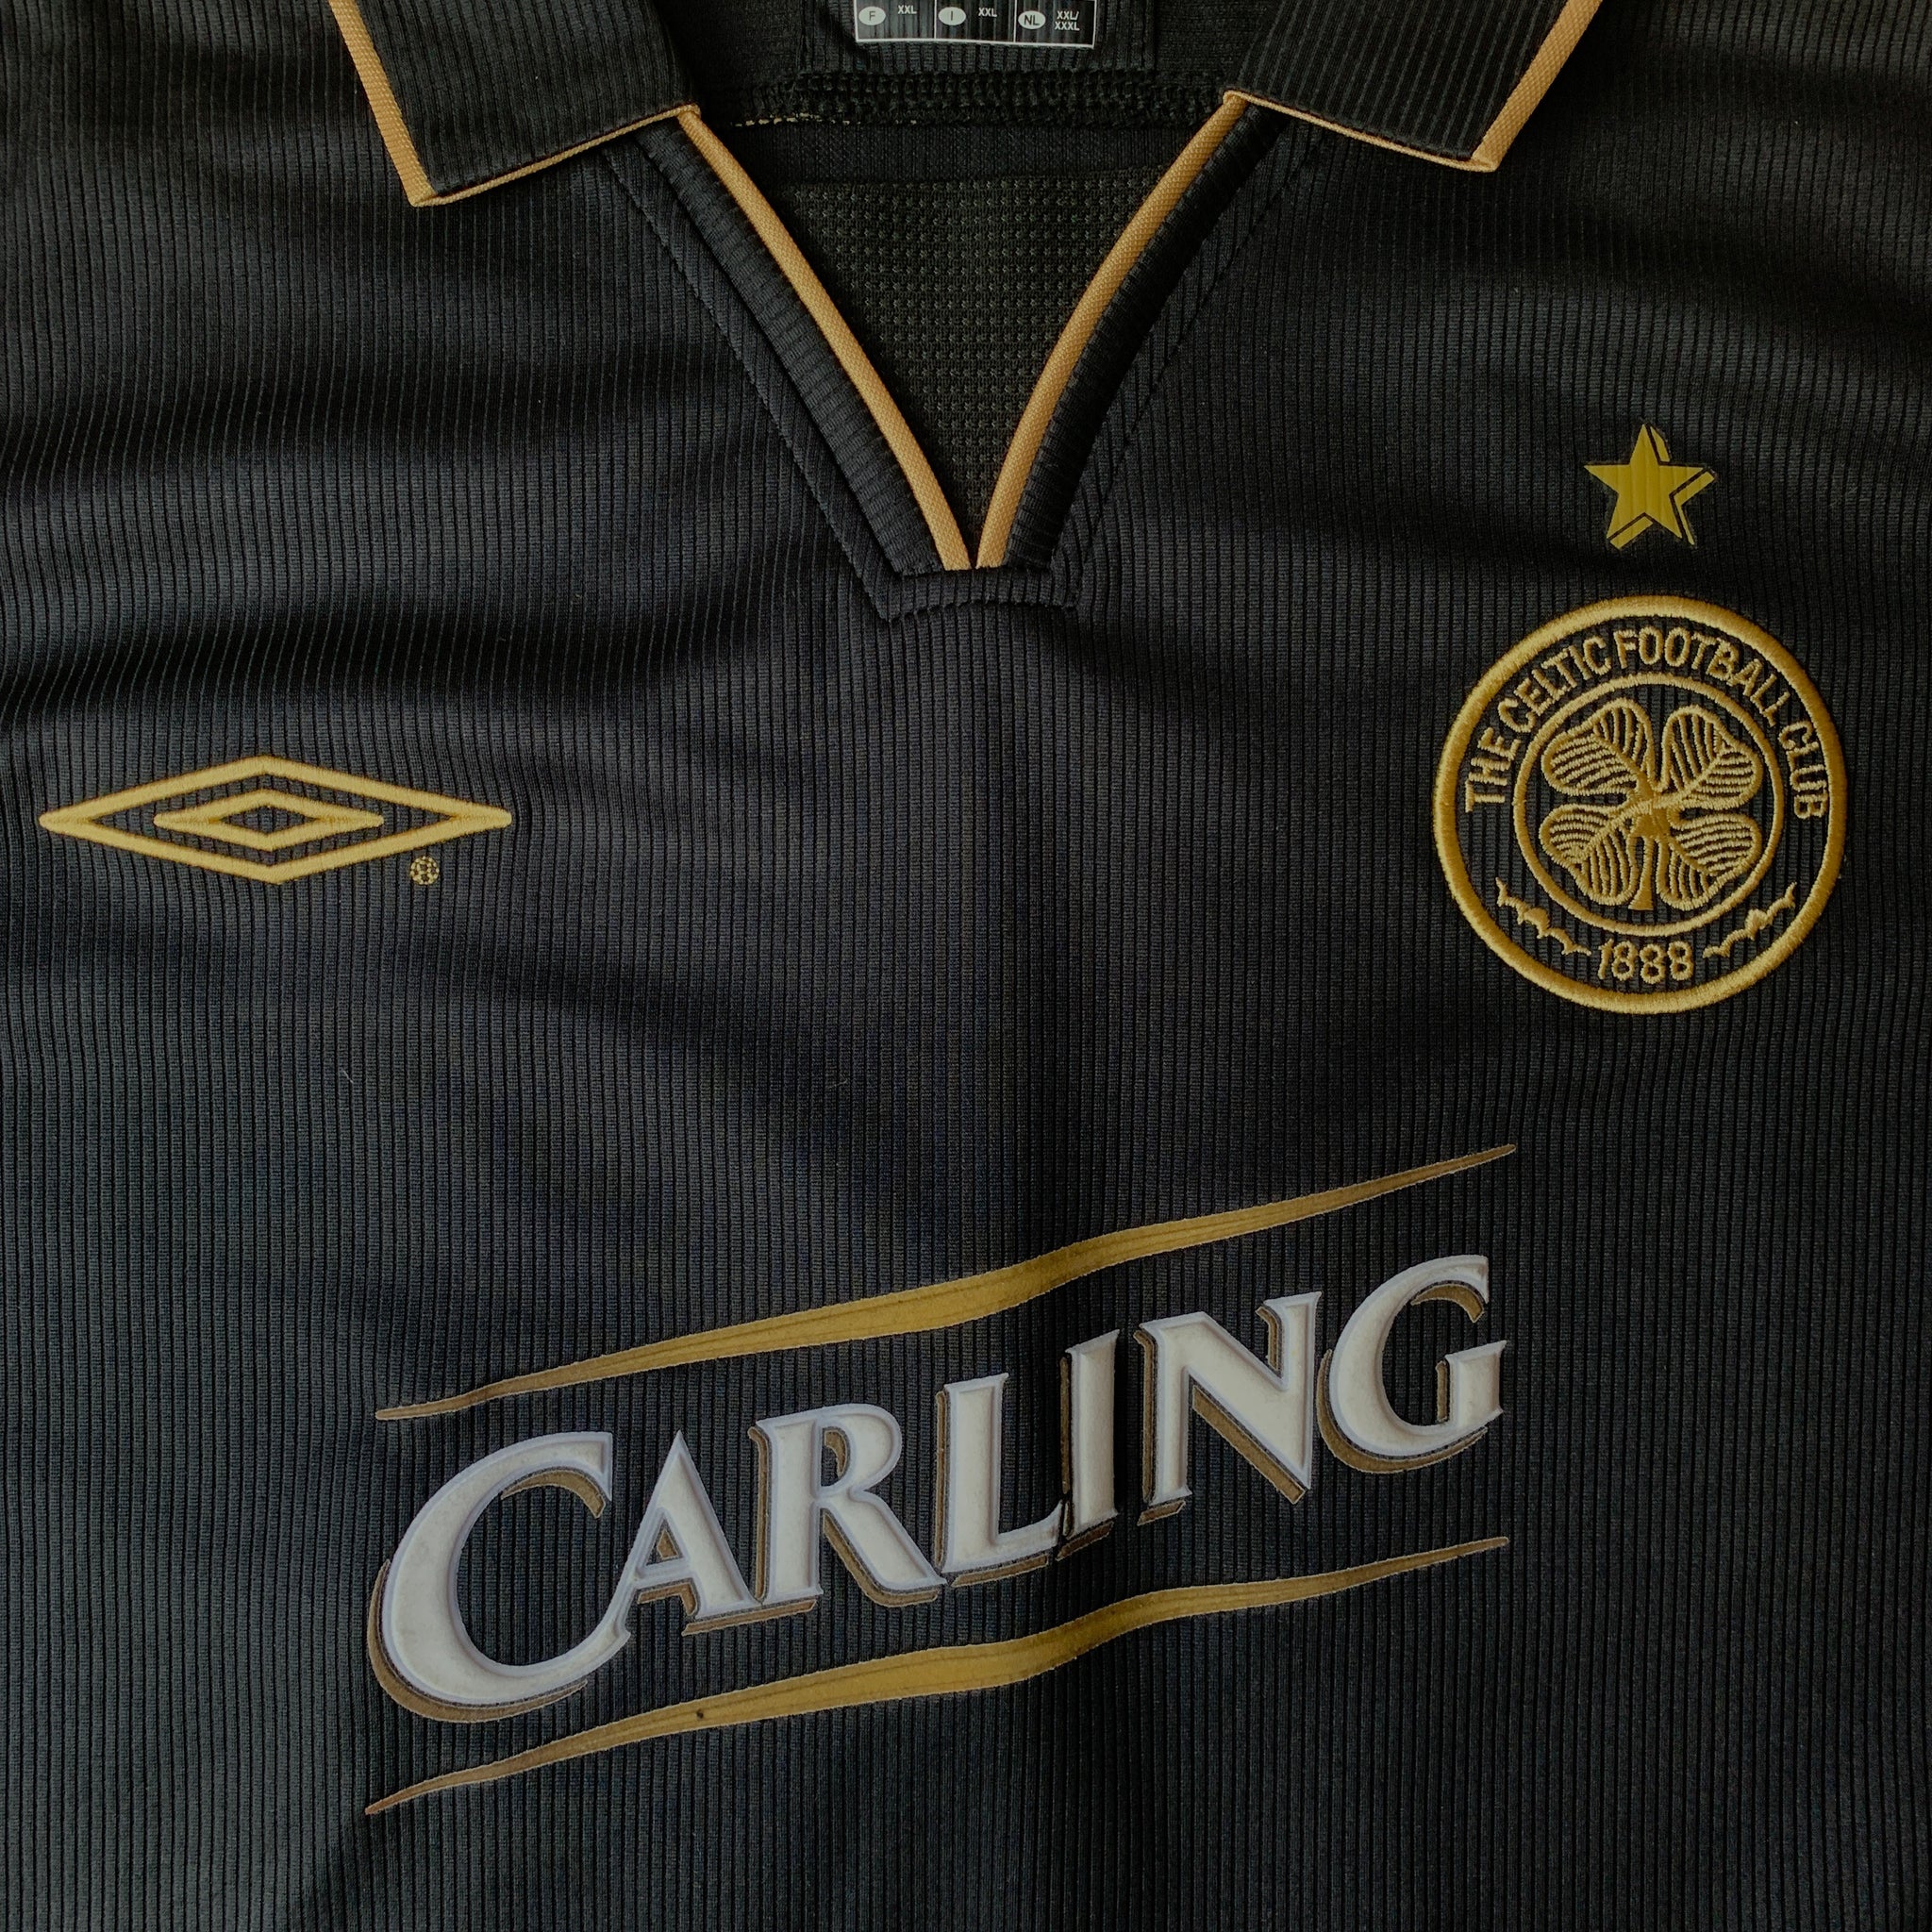 Celtic 2003-04 Away Kit